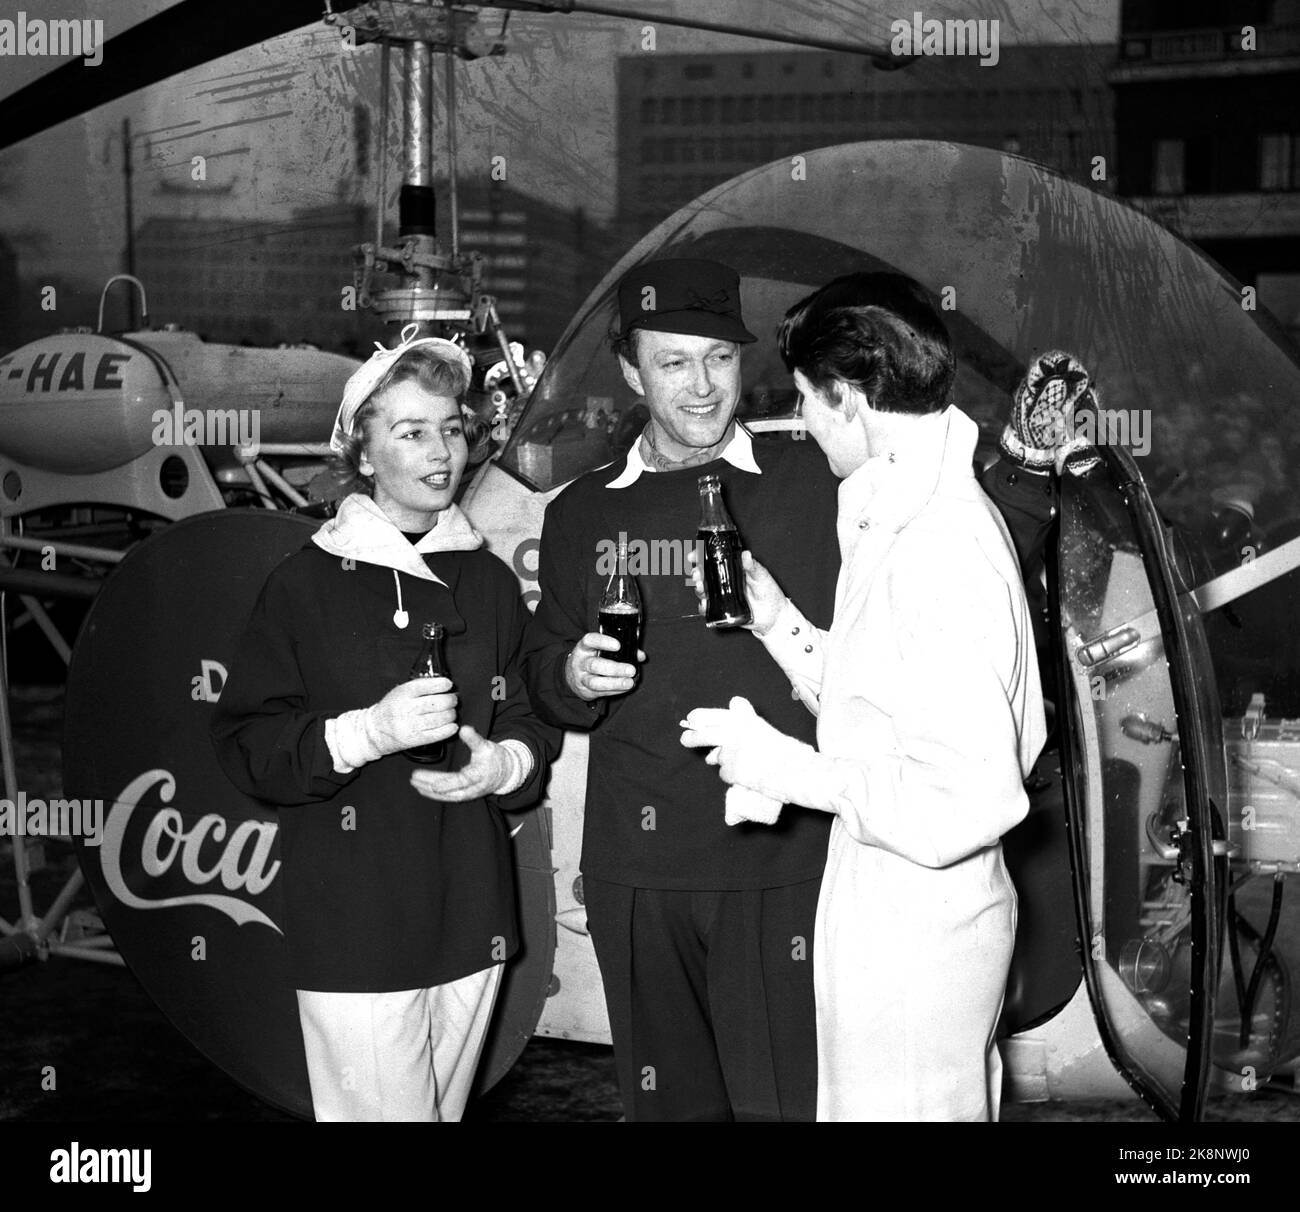 Jeux olympiques d'hiver d'Oslo 1952. Pendant les Jeux Olympiques, Coca Cola a eu une grande campagne publicitaire. Dans la photo, nous voyons un hélicoptère avec la publicité Coca Cola qui a atterri devant la mairie. Ici, les gens aiment boire du Coca Cola directement de la bouteille. Banque D'Images